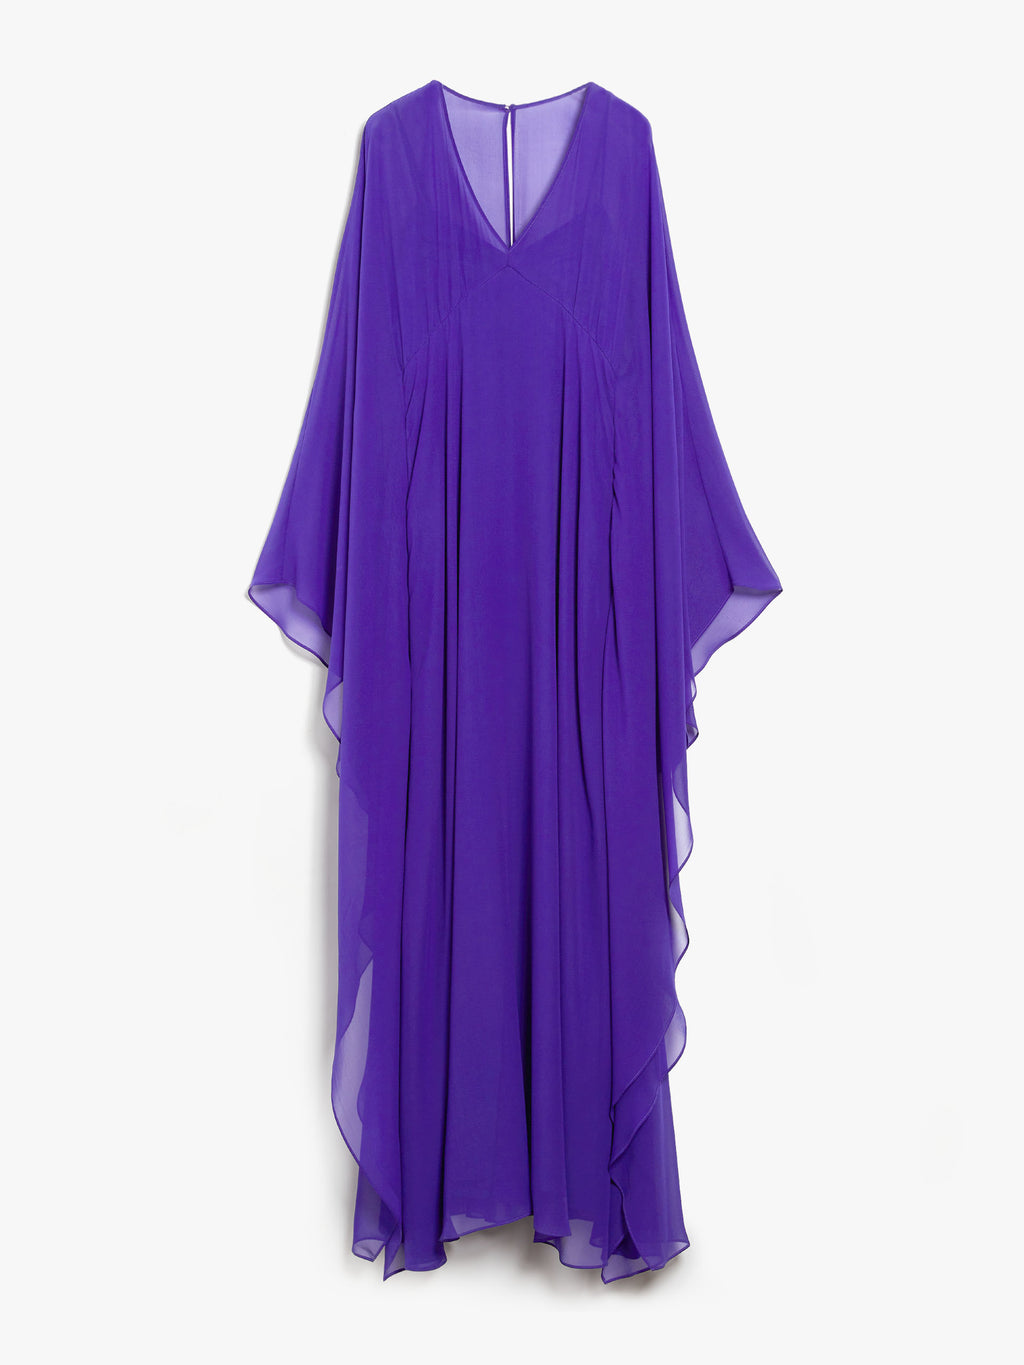 Long dress in georgette di seta viola